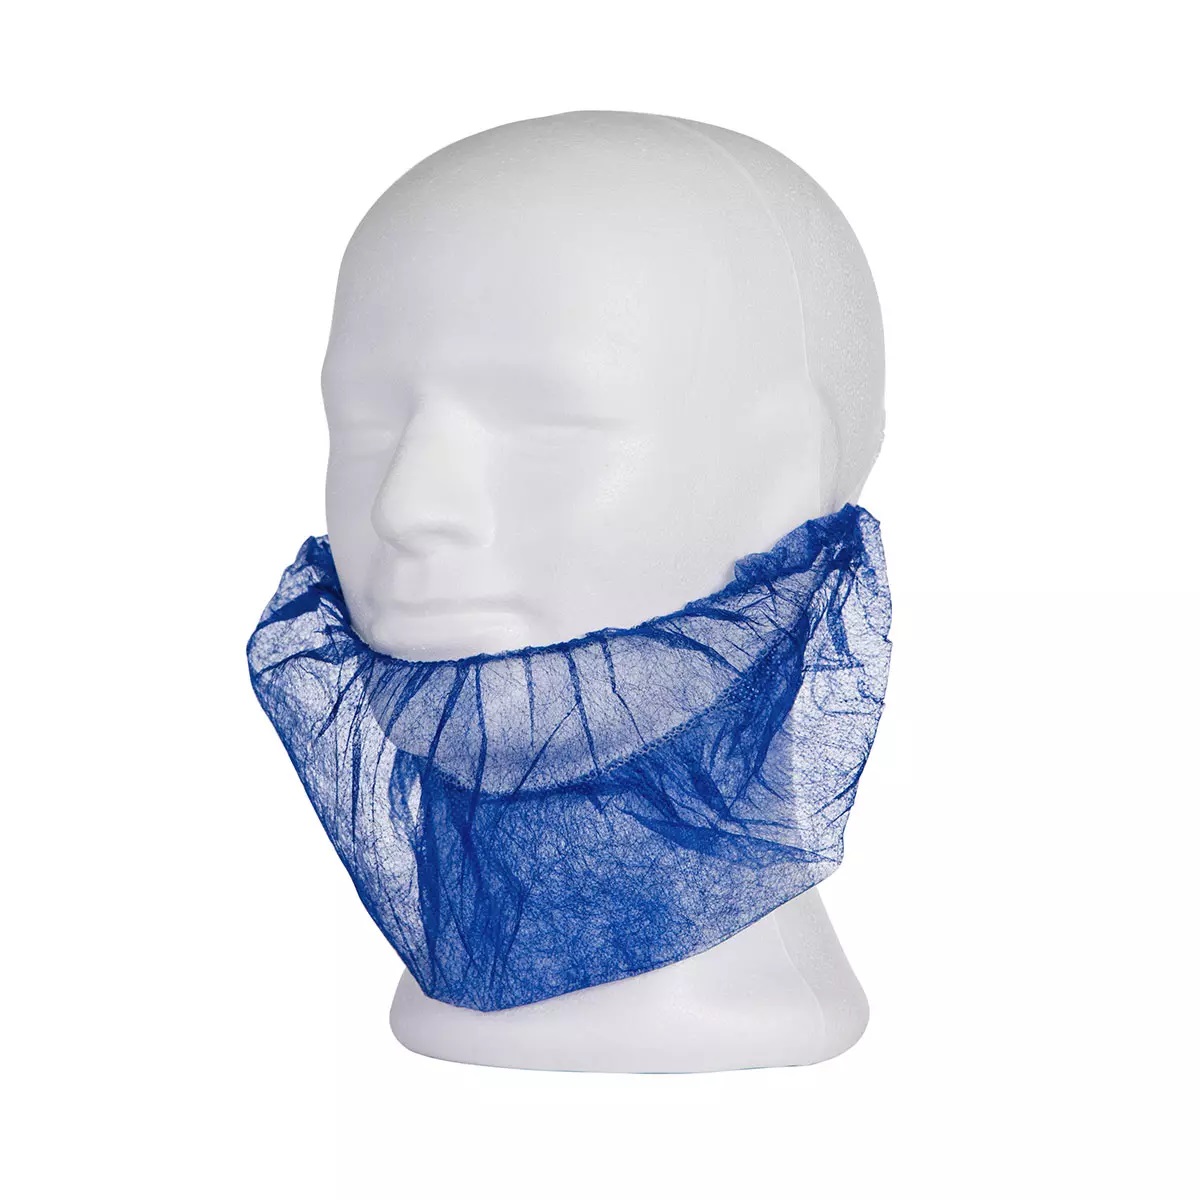 AMPRI-Einweg-Bartmasken, MED COMFORT PP BARTMASKE, mit Elastikbändern, VE = Pkg. á 100 Stück, blau